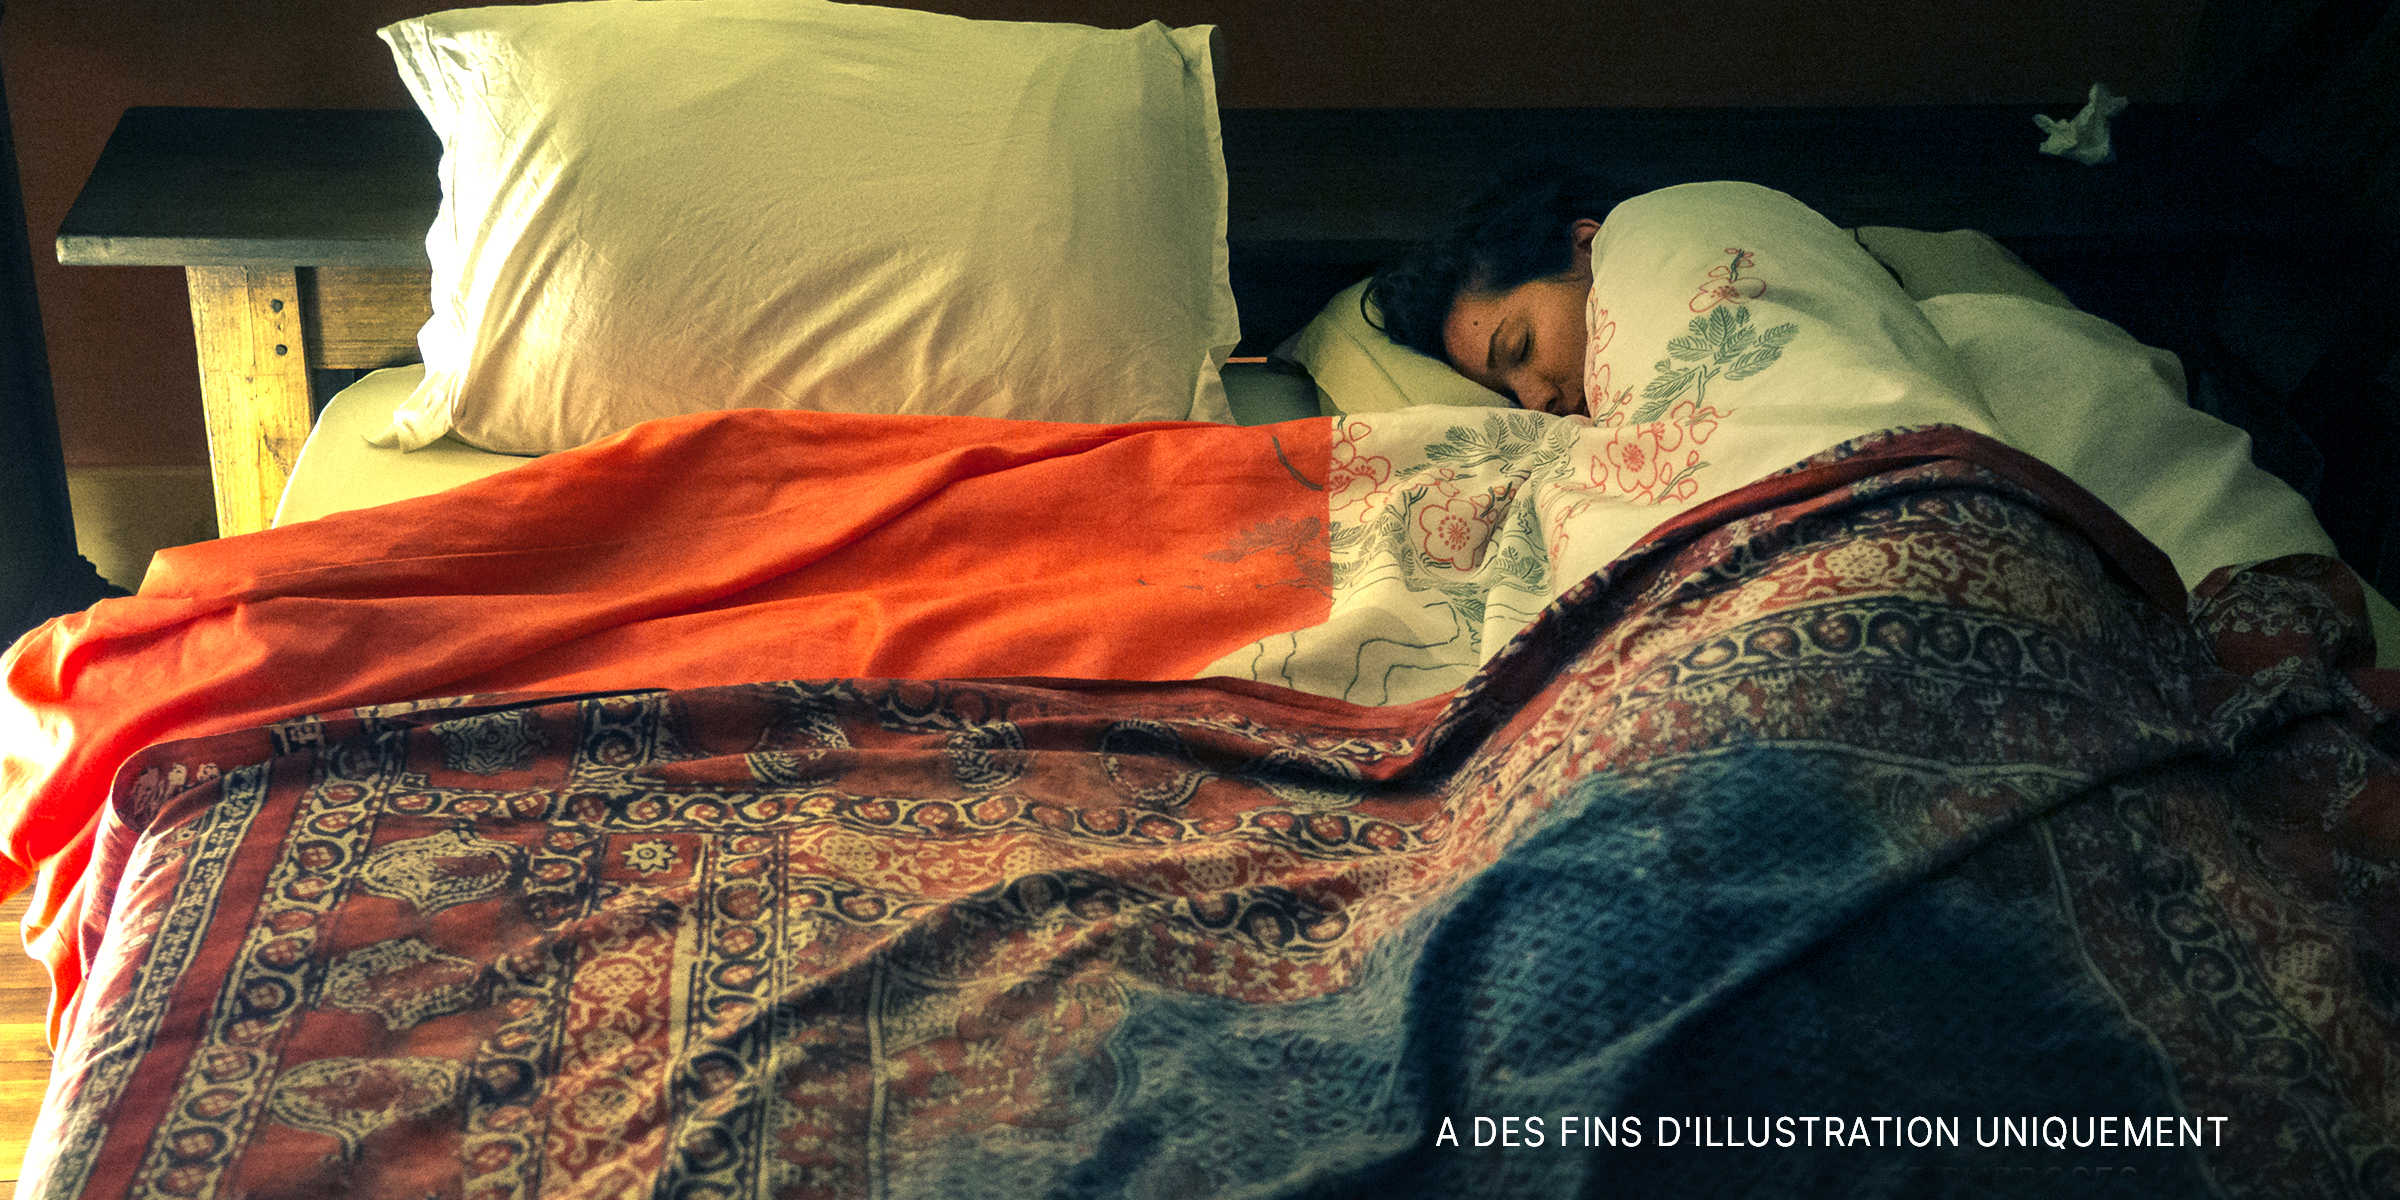 Une femme dormant seule dans son lit | Source : Getty Images